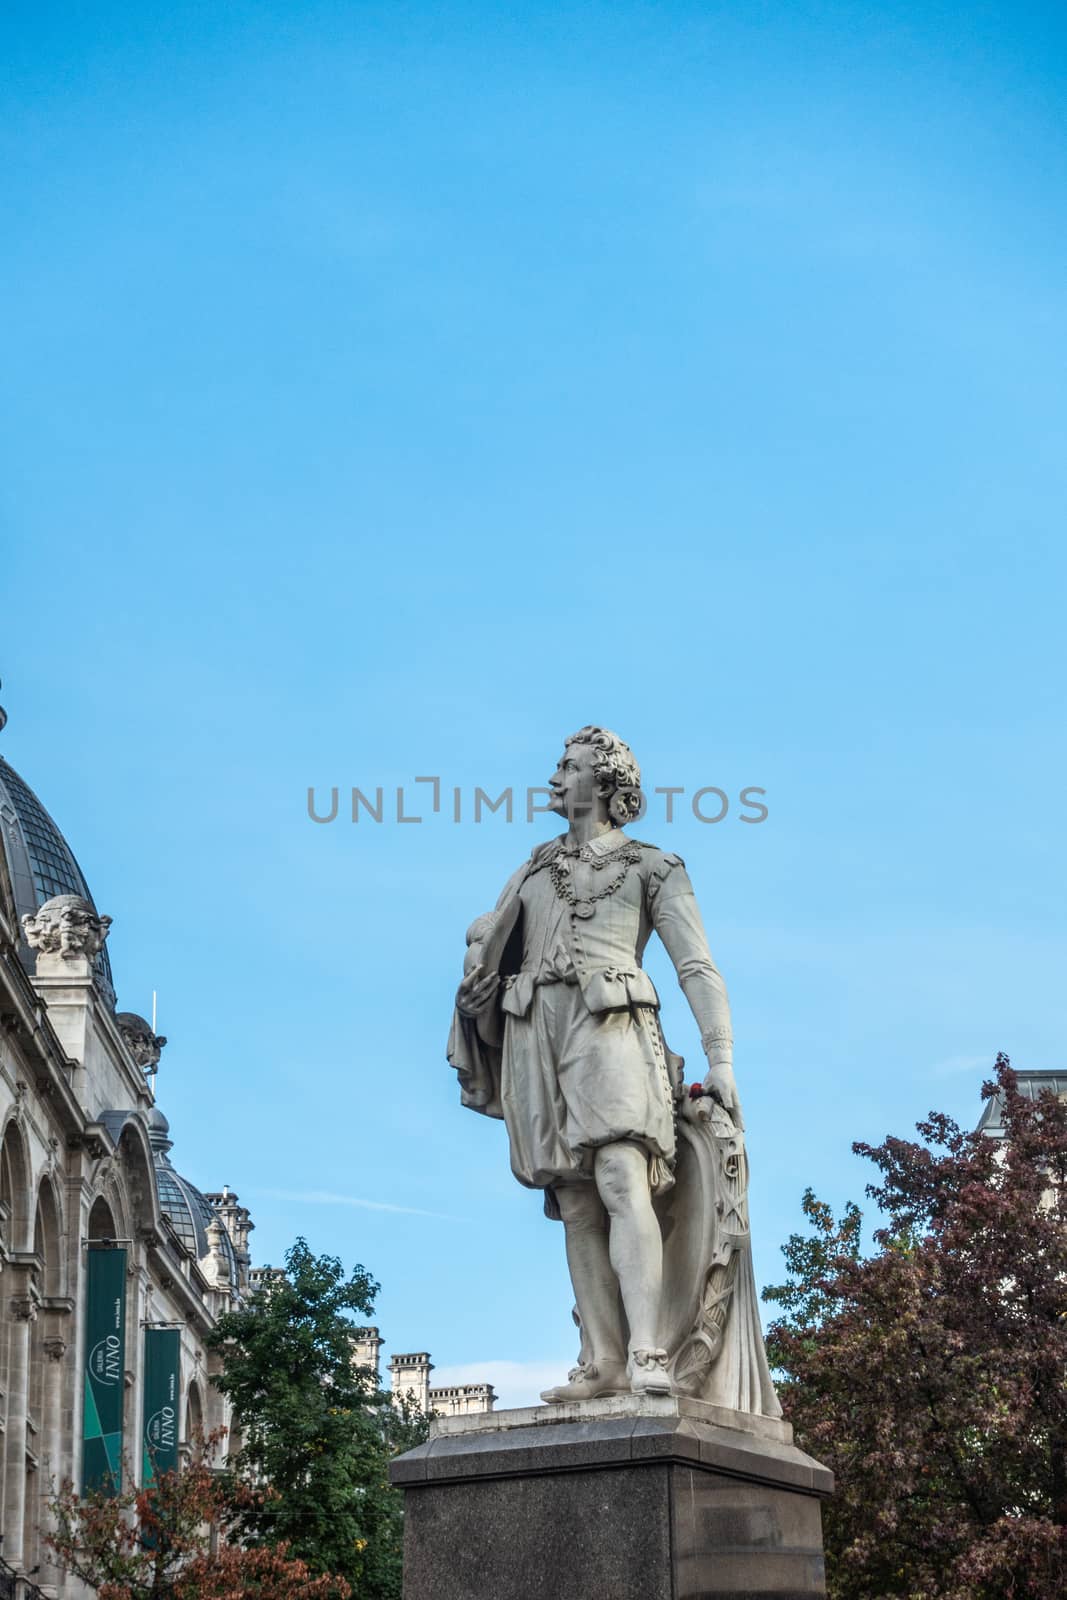 Sir Anthony Van Dyck statue in Antwerp, Belgium. by Claudine